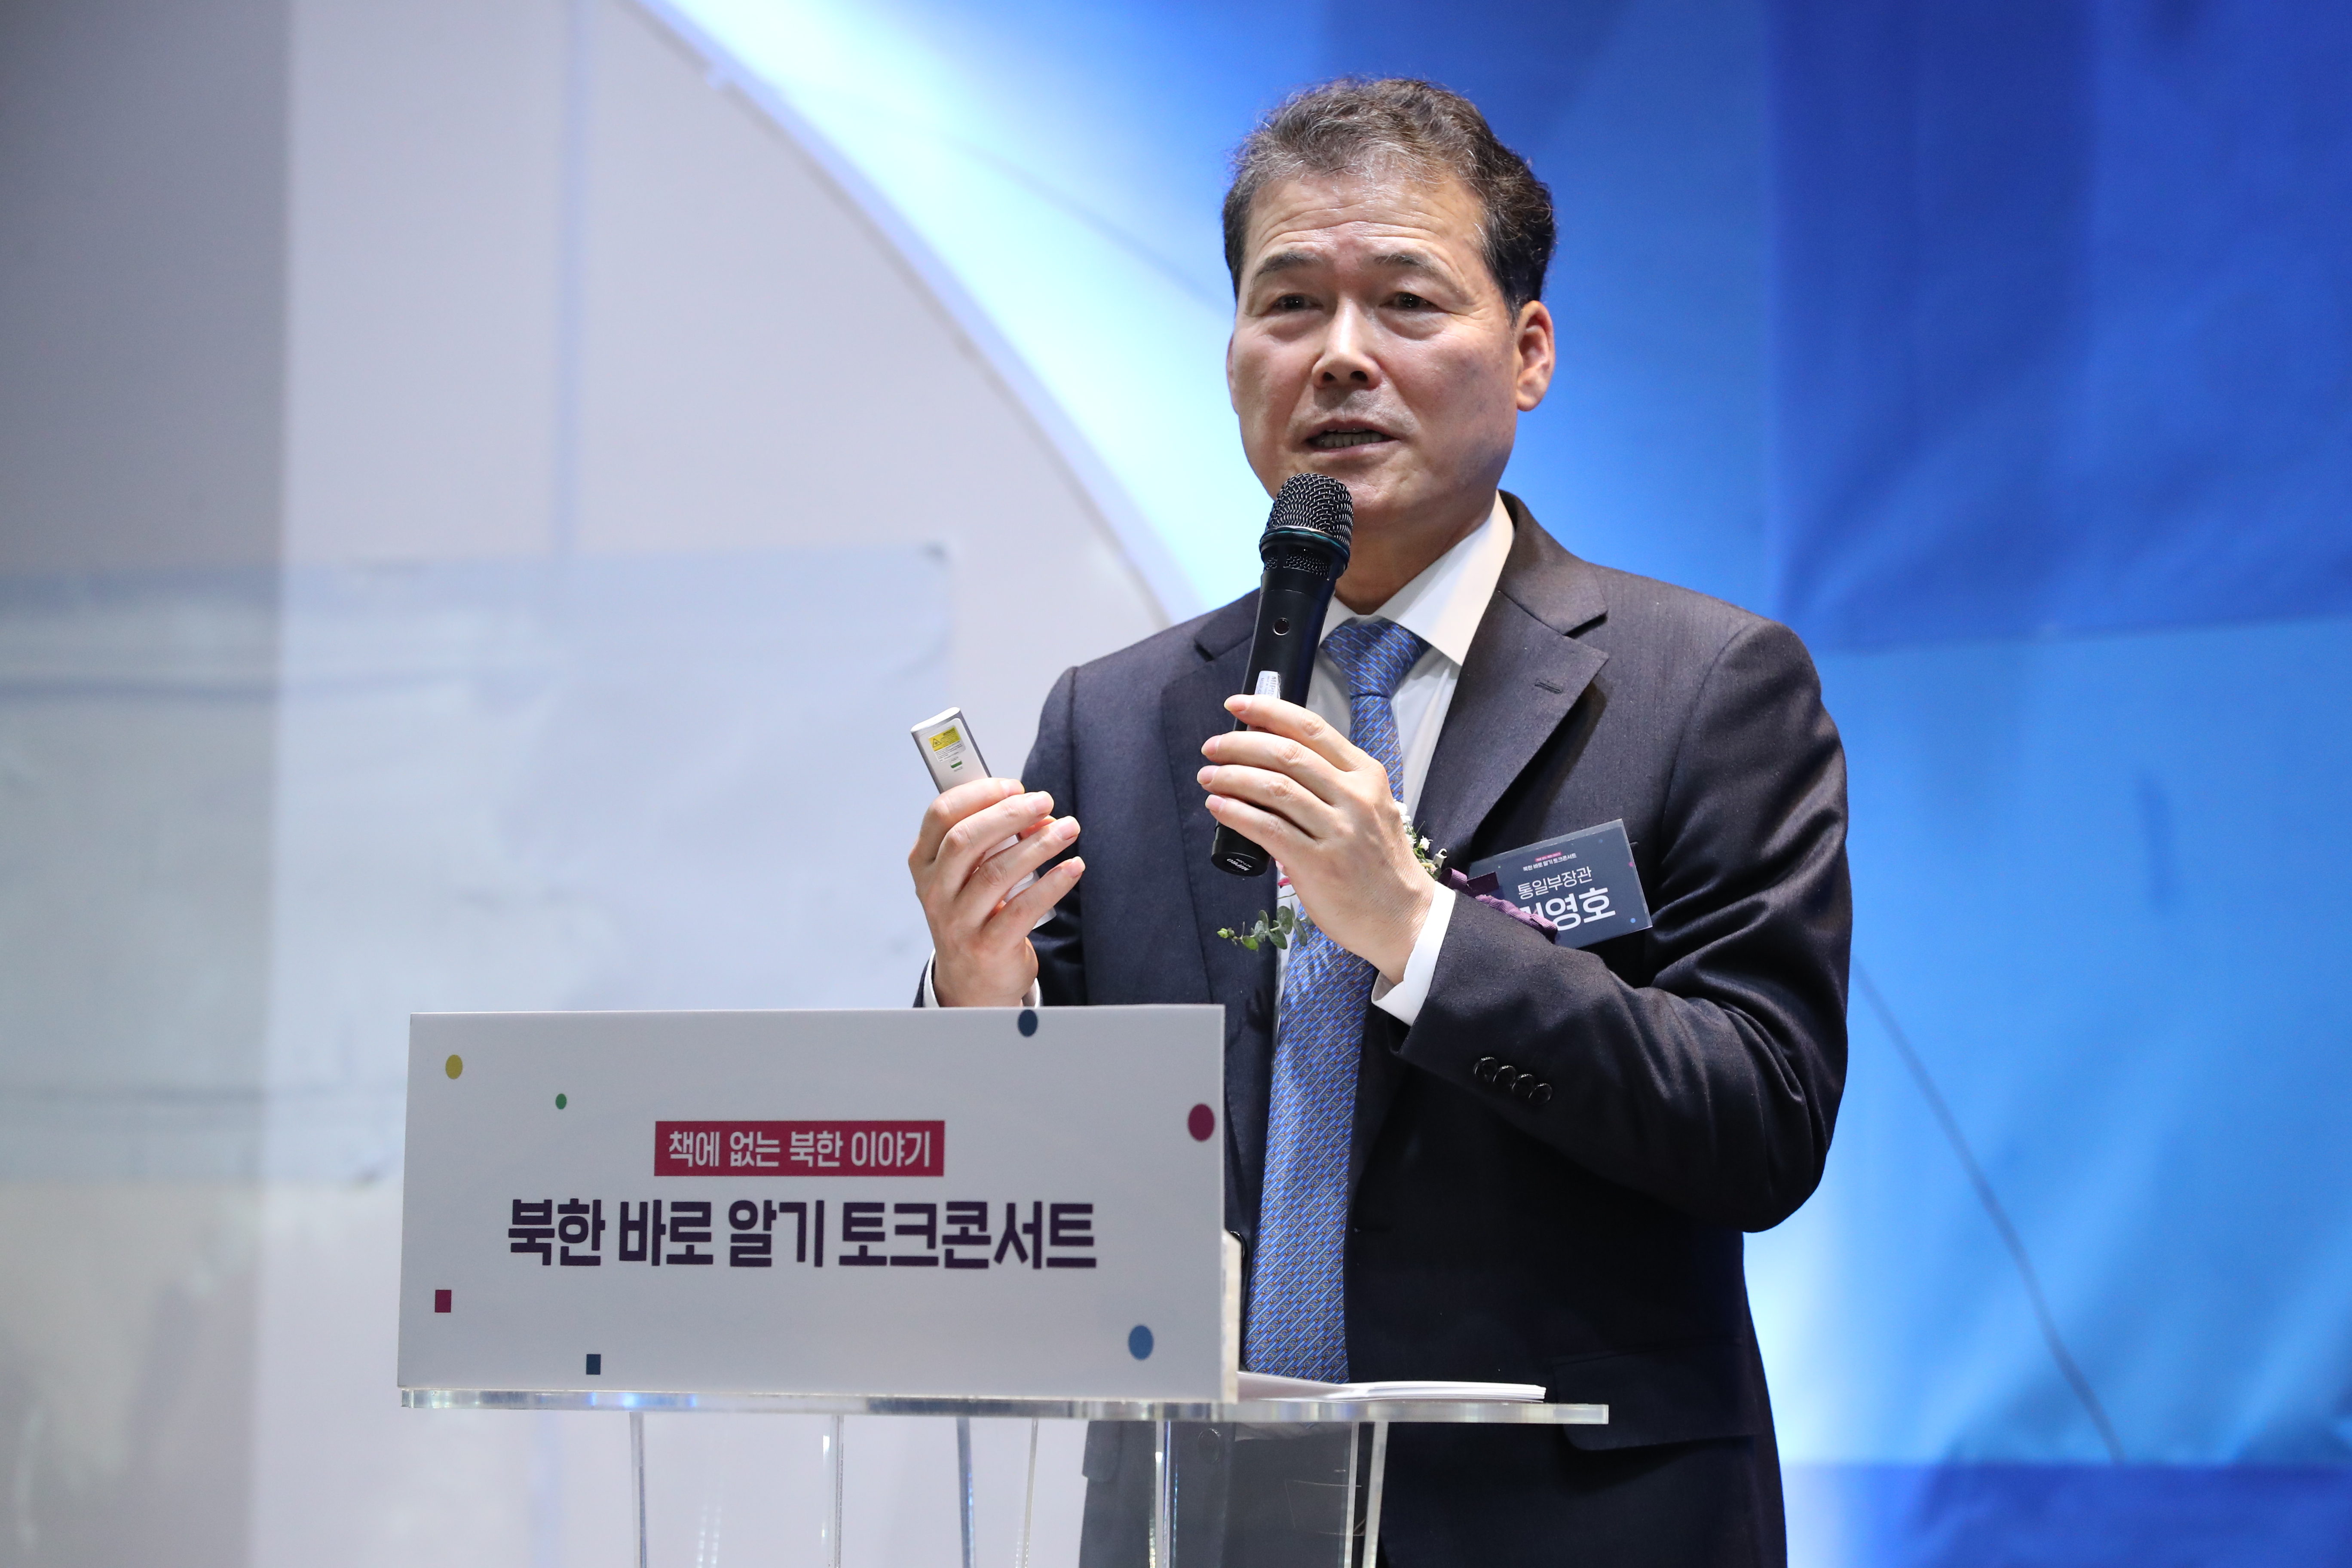 240203 (보도자료) 통일부장관  찾아가는 북(北)스토리 토크콘서트 개최 사진-2.jpg Images